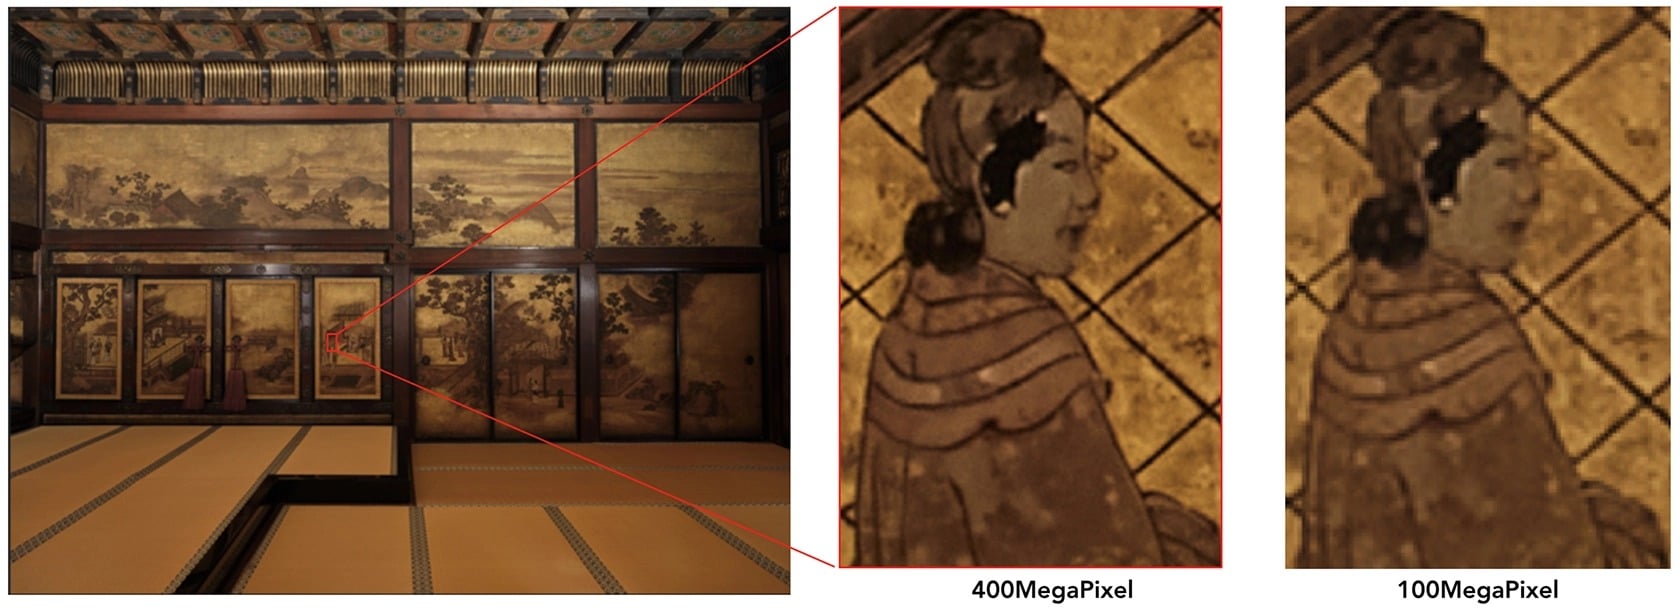 Fujifilm thêm tính năng Pixel Shift Multi-Shot chụp ảnh 400MP lên GFX100